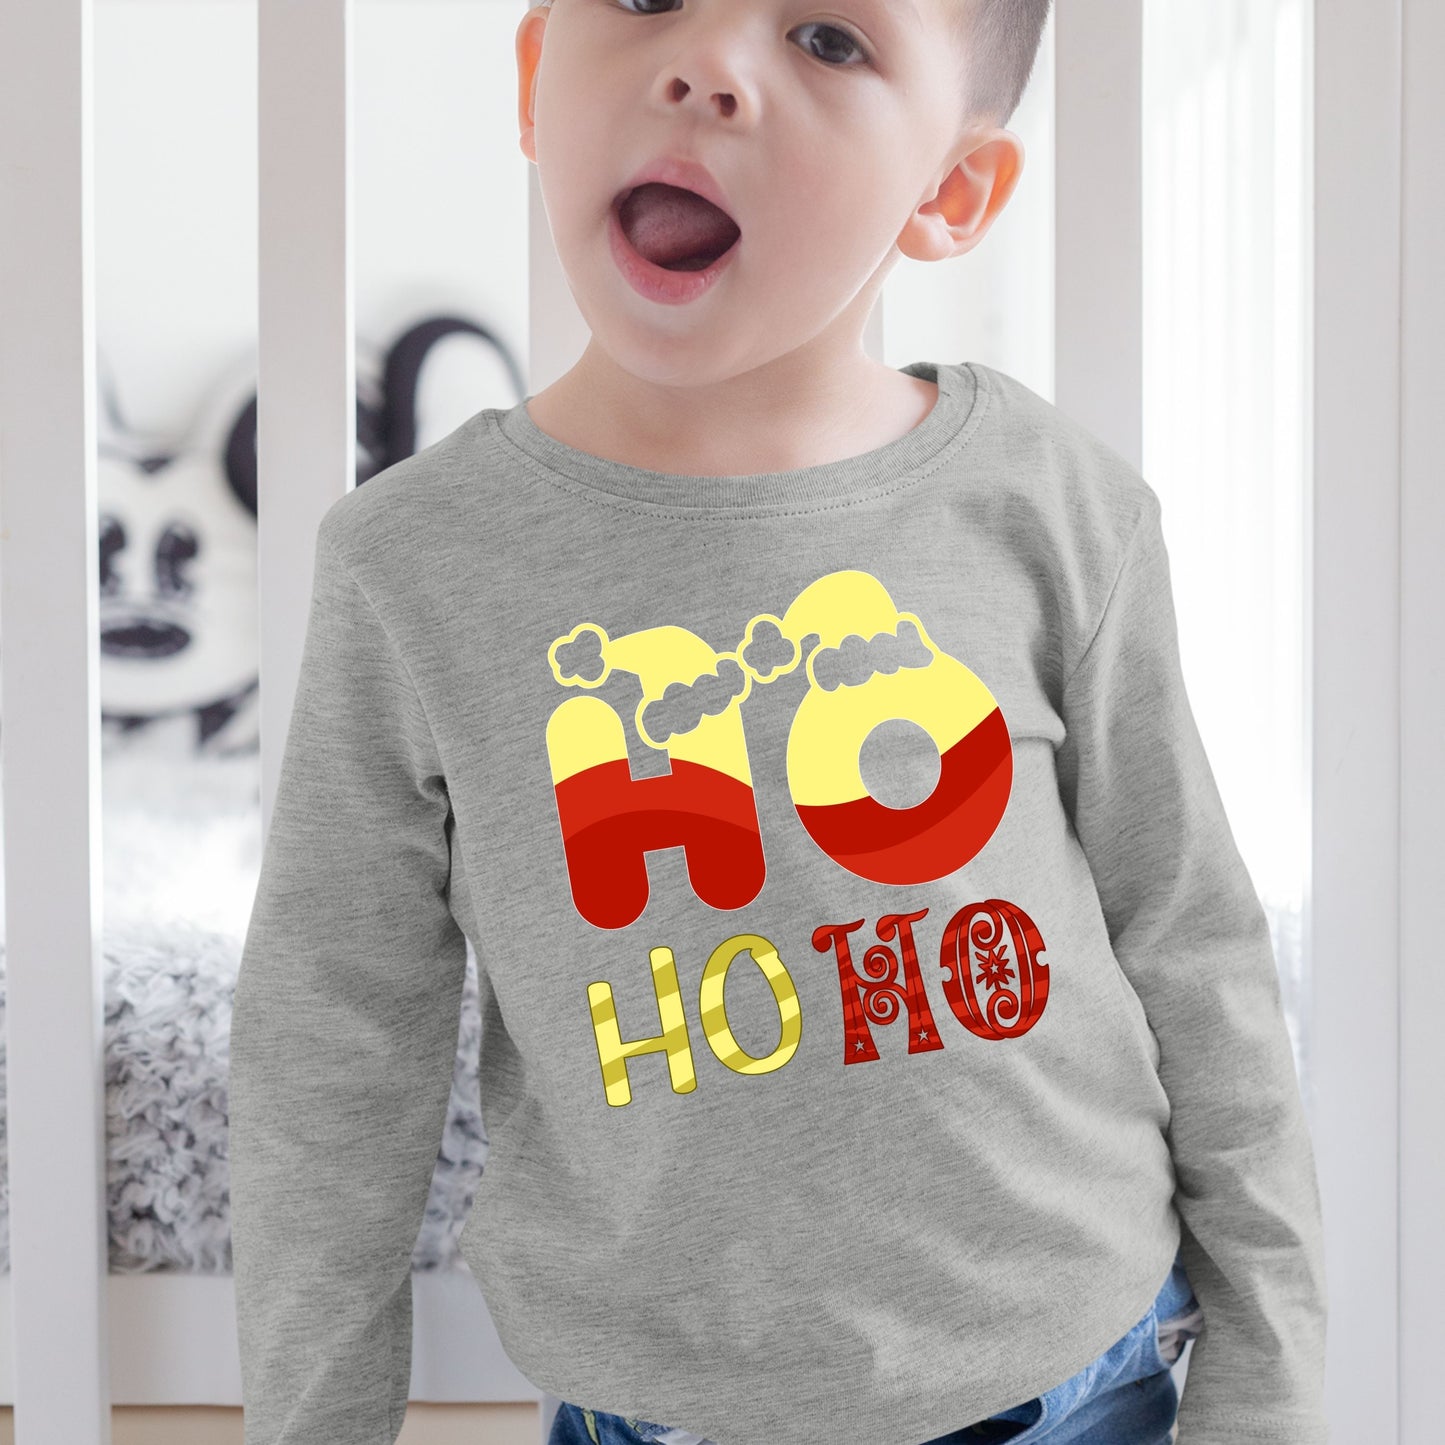 Ho Ho Ho, Christmas Crewneck For Toddler, Christmas Long Sleeves, Christmas Sweatshirt, Christmas Sweater, Christmas Present